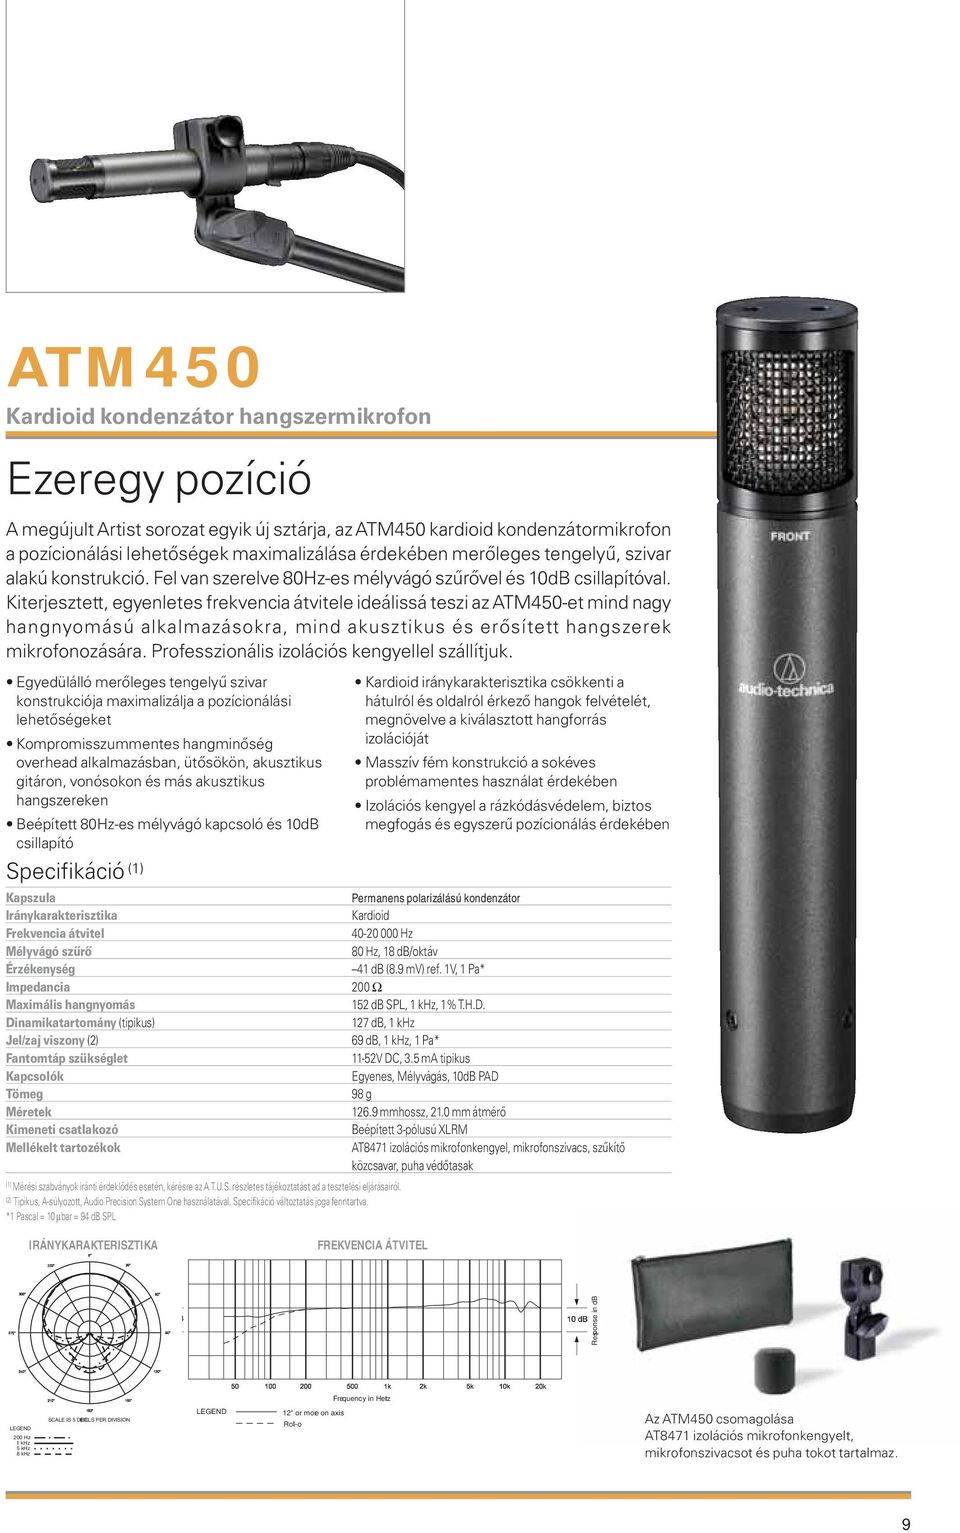 Kiterjesztett, egyenletes frekvencia átvitele ideálissá teszi az ATM450-et mind nagy hangnyomású alkalmazásokra, mind akusztikus és erősített hangszerek mikrofonozására.